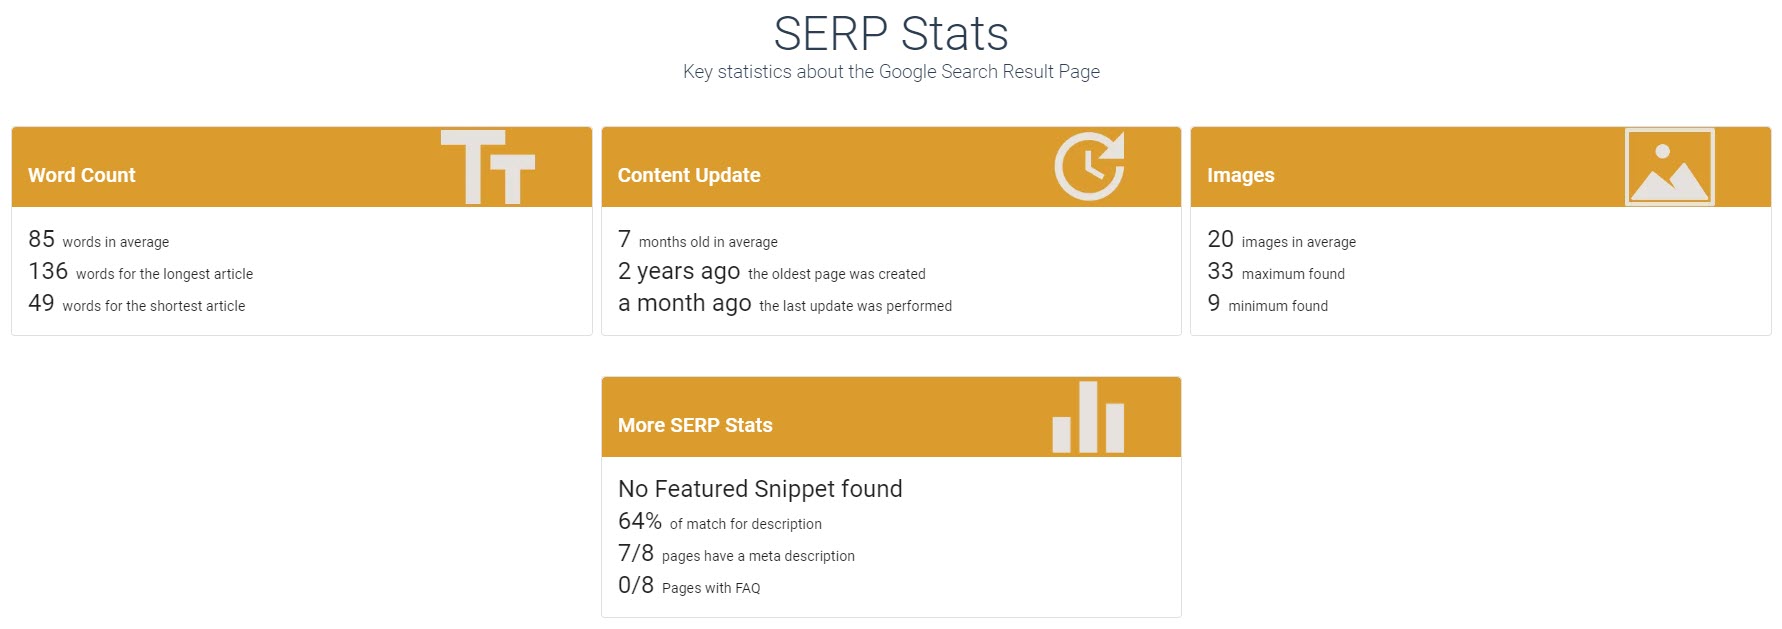 SERP Stats